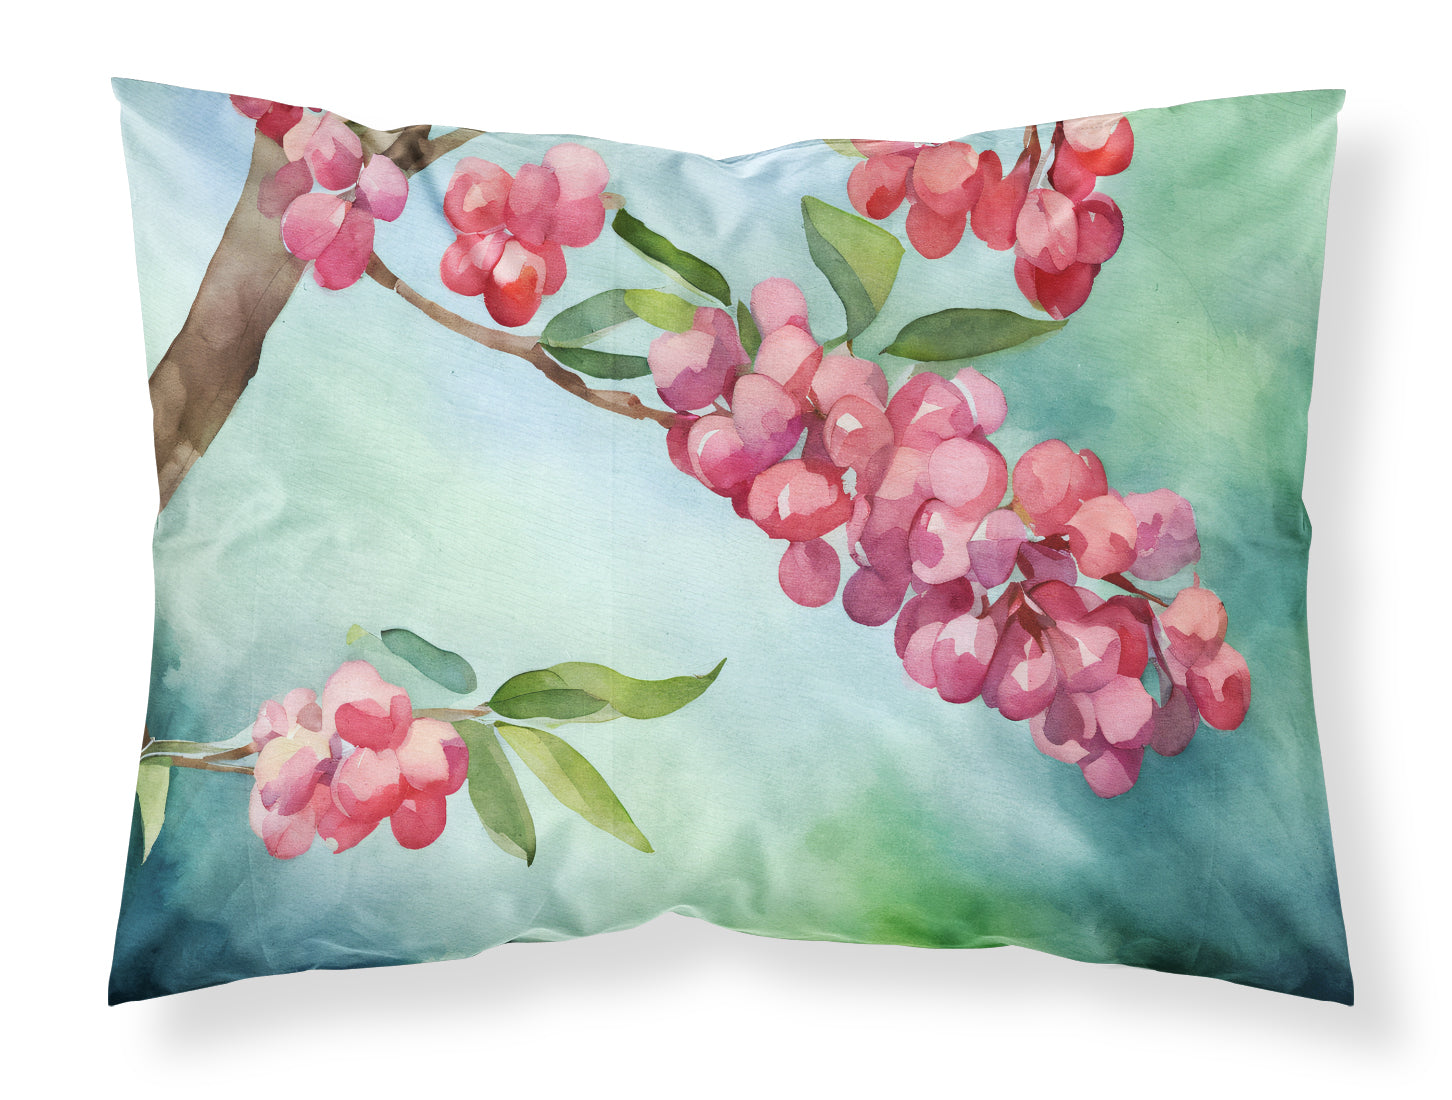 Buy this Pennsylvania Mountain Laurels in Watercolor Fabric Standard Pillowcase